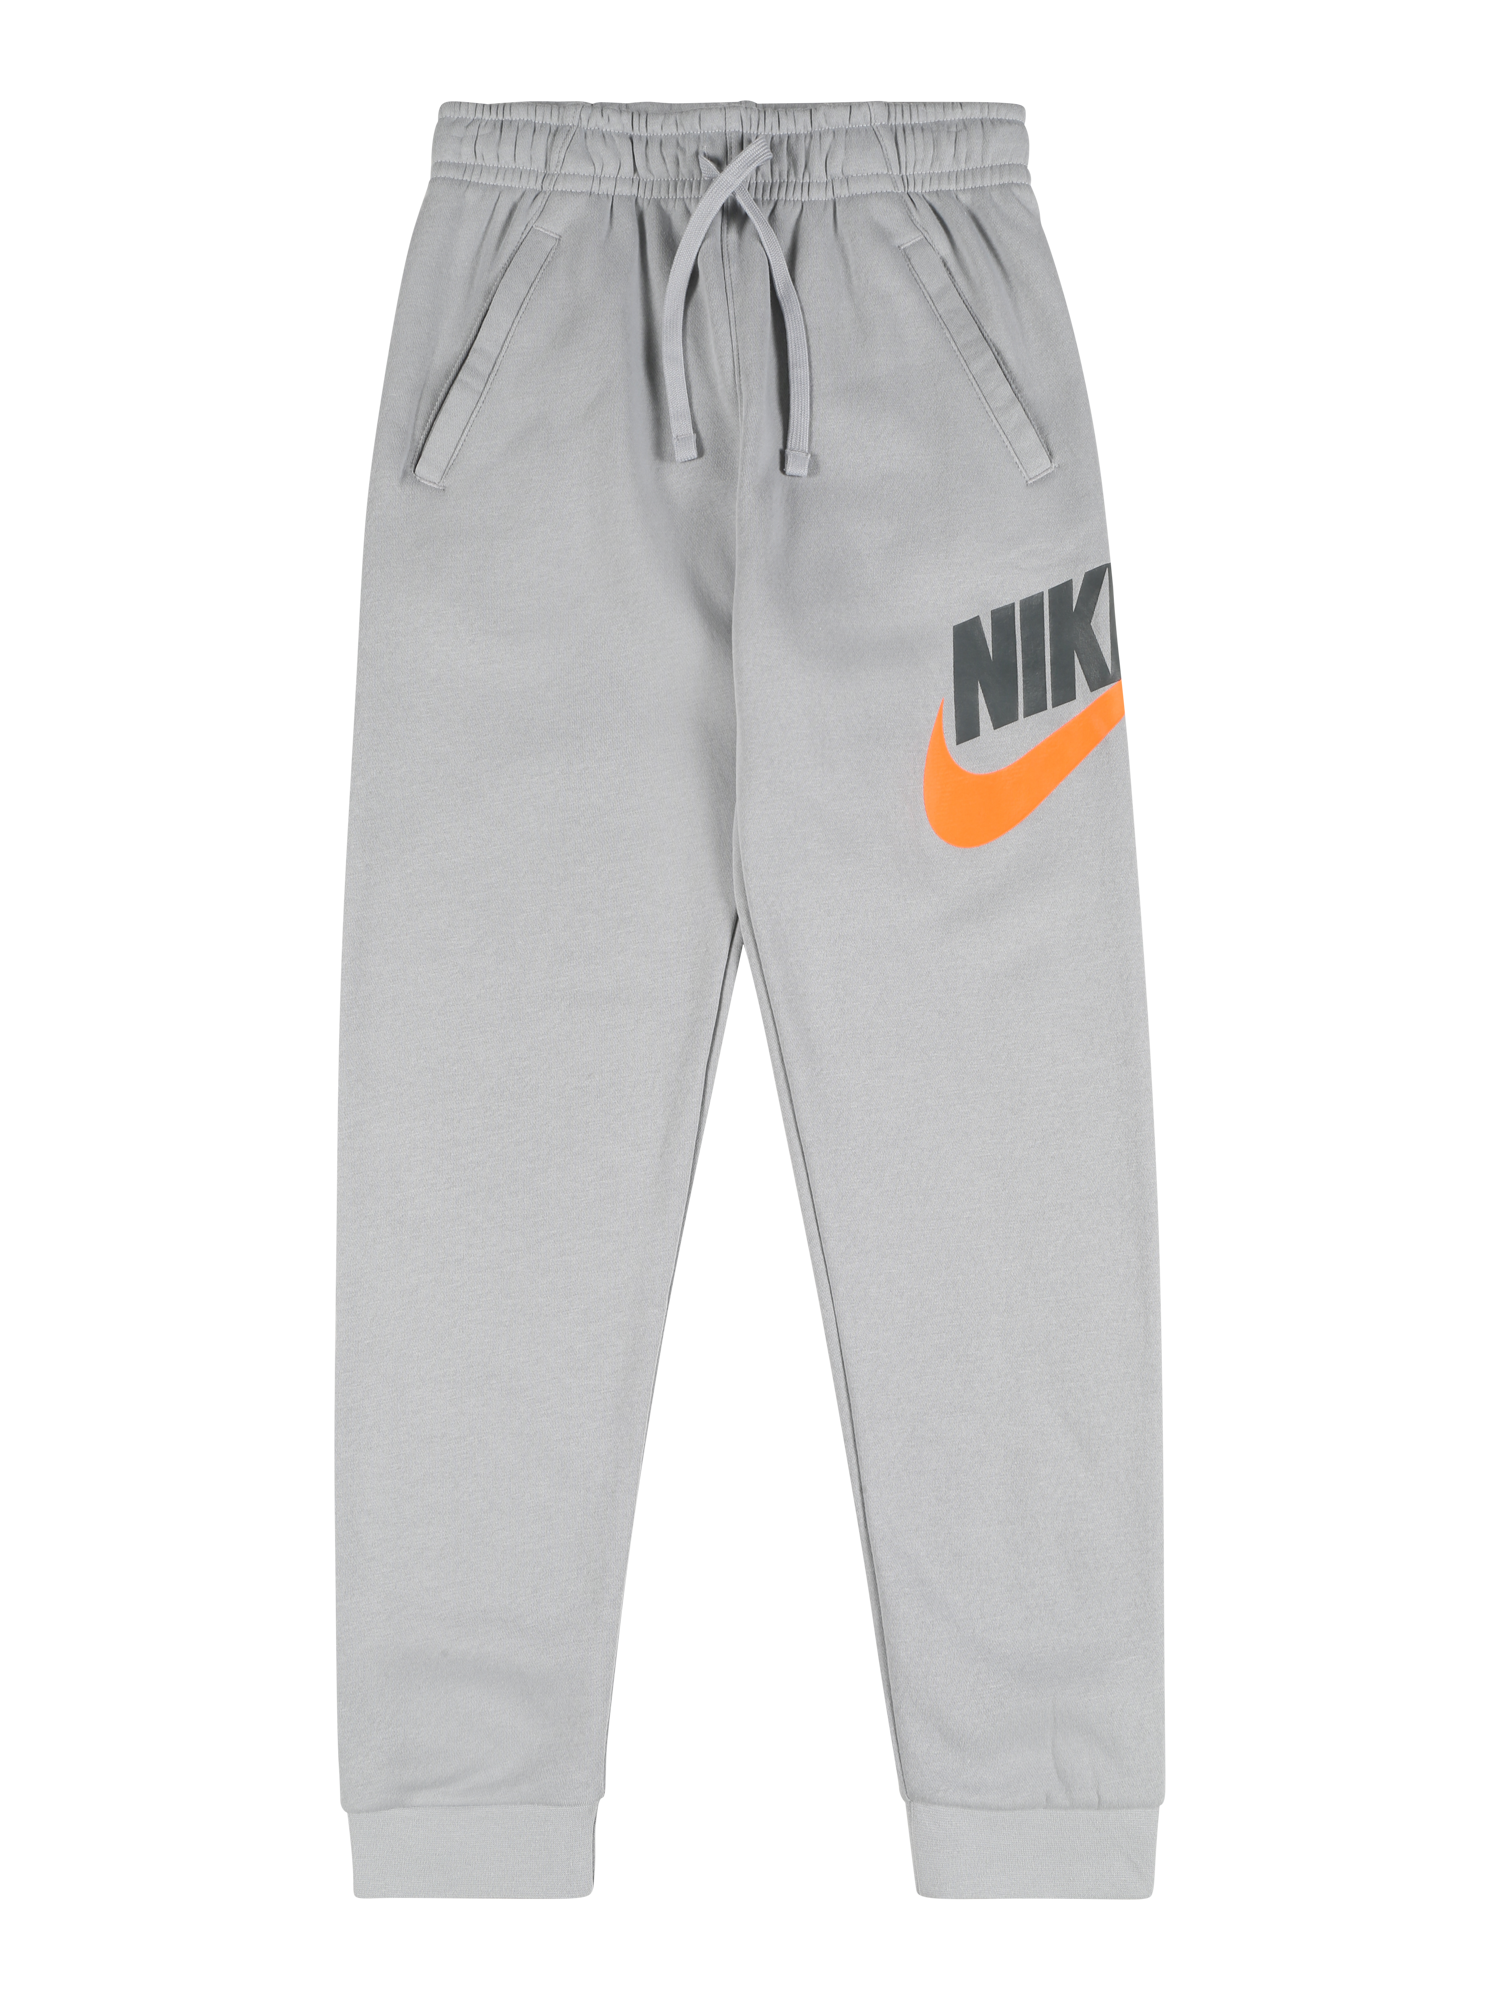 Chłopcy Dzieci Nike Sportswear Spodnie w kolorze Szary, Ciemnoszarym 